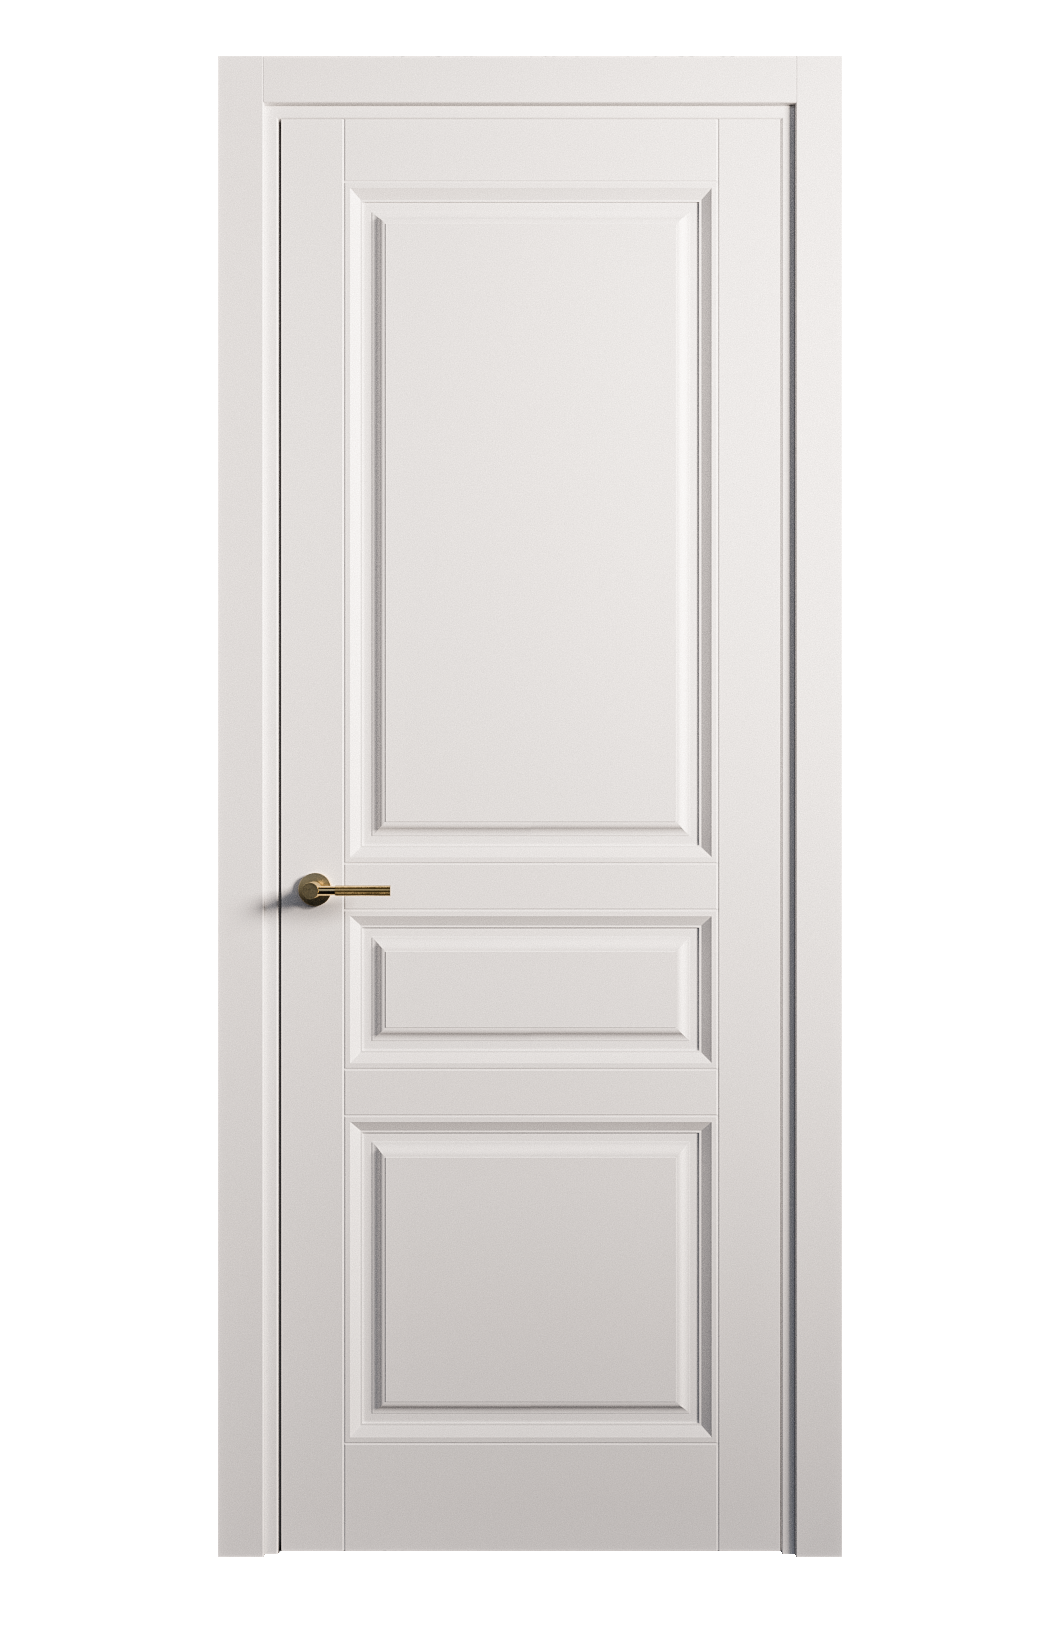 Межкомнатная дверь Venezia-2 глухая эмаль ral 9003 25798